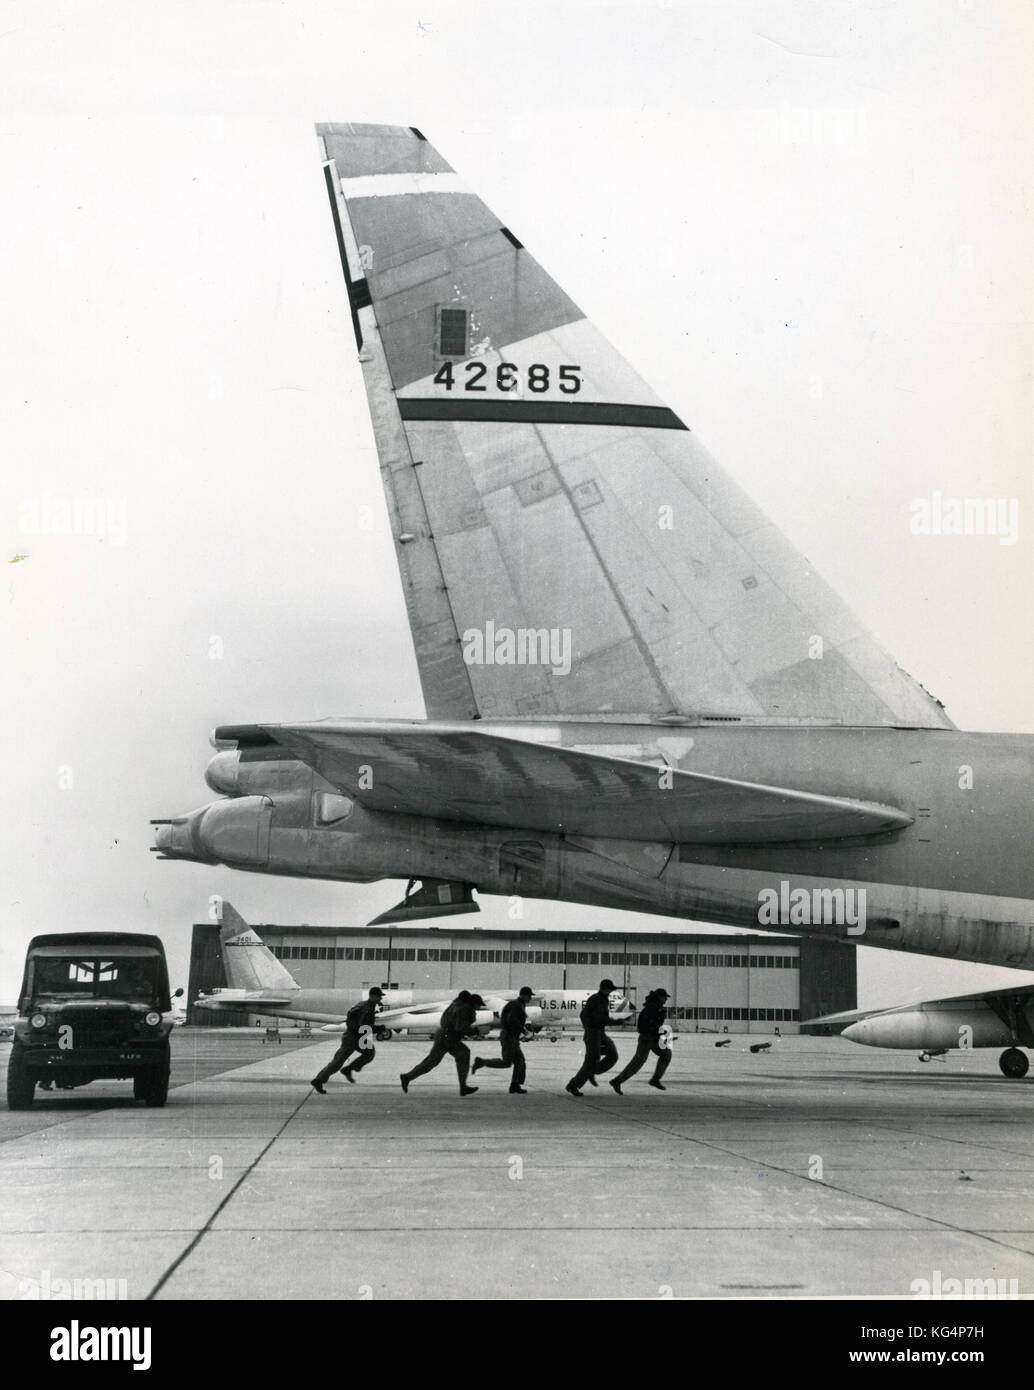 1959- Foto de la Fuerza Aérea de EE.UU. el Comando Aéreo Estratégico (SAC) tripulaciones huyendo de sus jeeps a bordo de aviones de combate listo. El SAC fue establecido en marzo de 1946 con una misión primordial de repúblicas 'deterrence'. Foto de stock